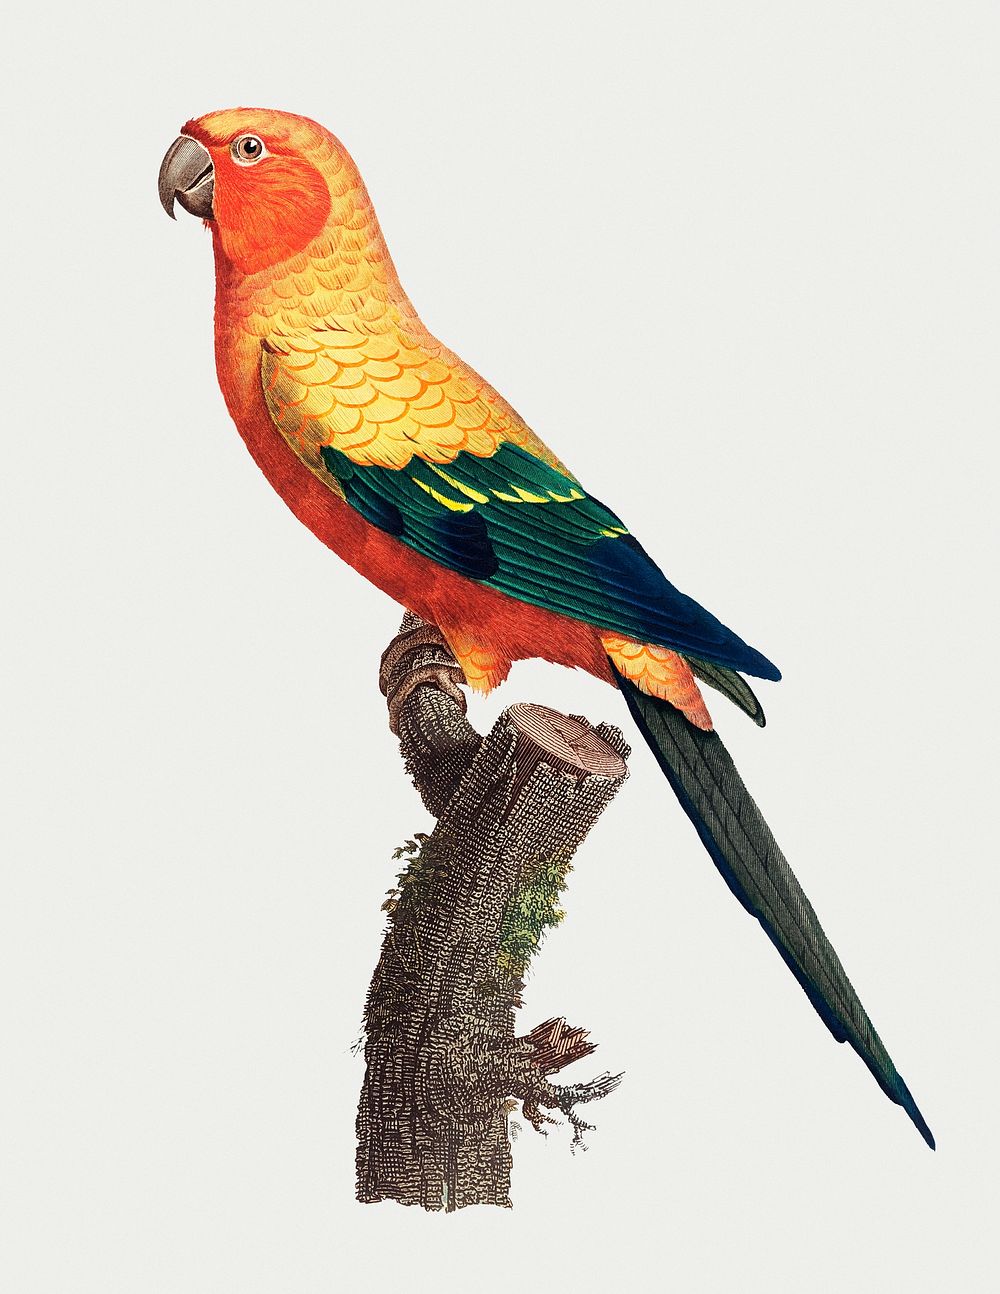 The Sun Parakeet (Aratinga solstitialis), male vintage illustration